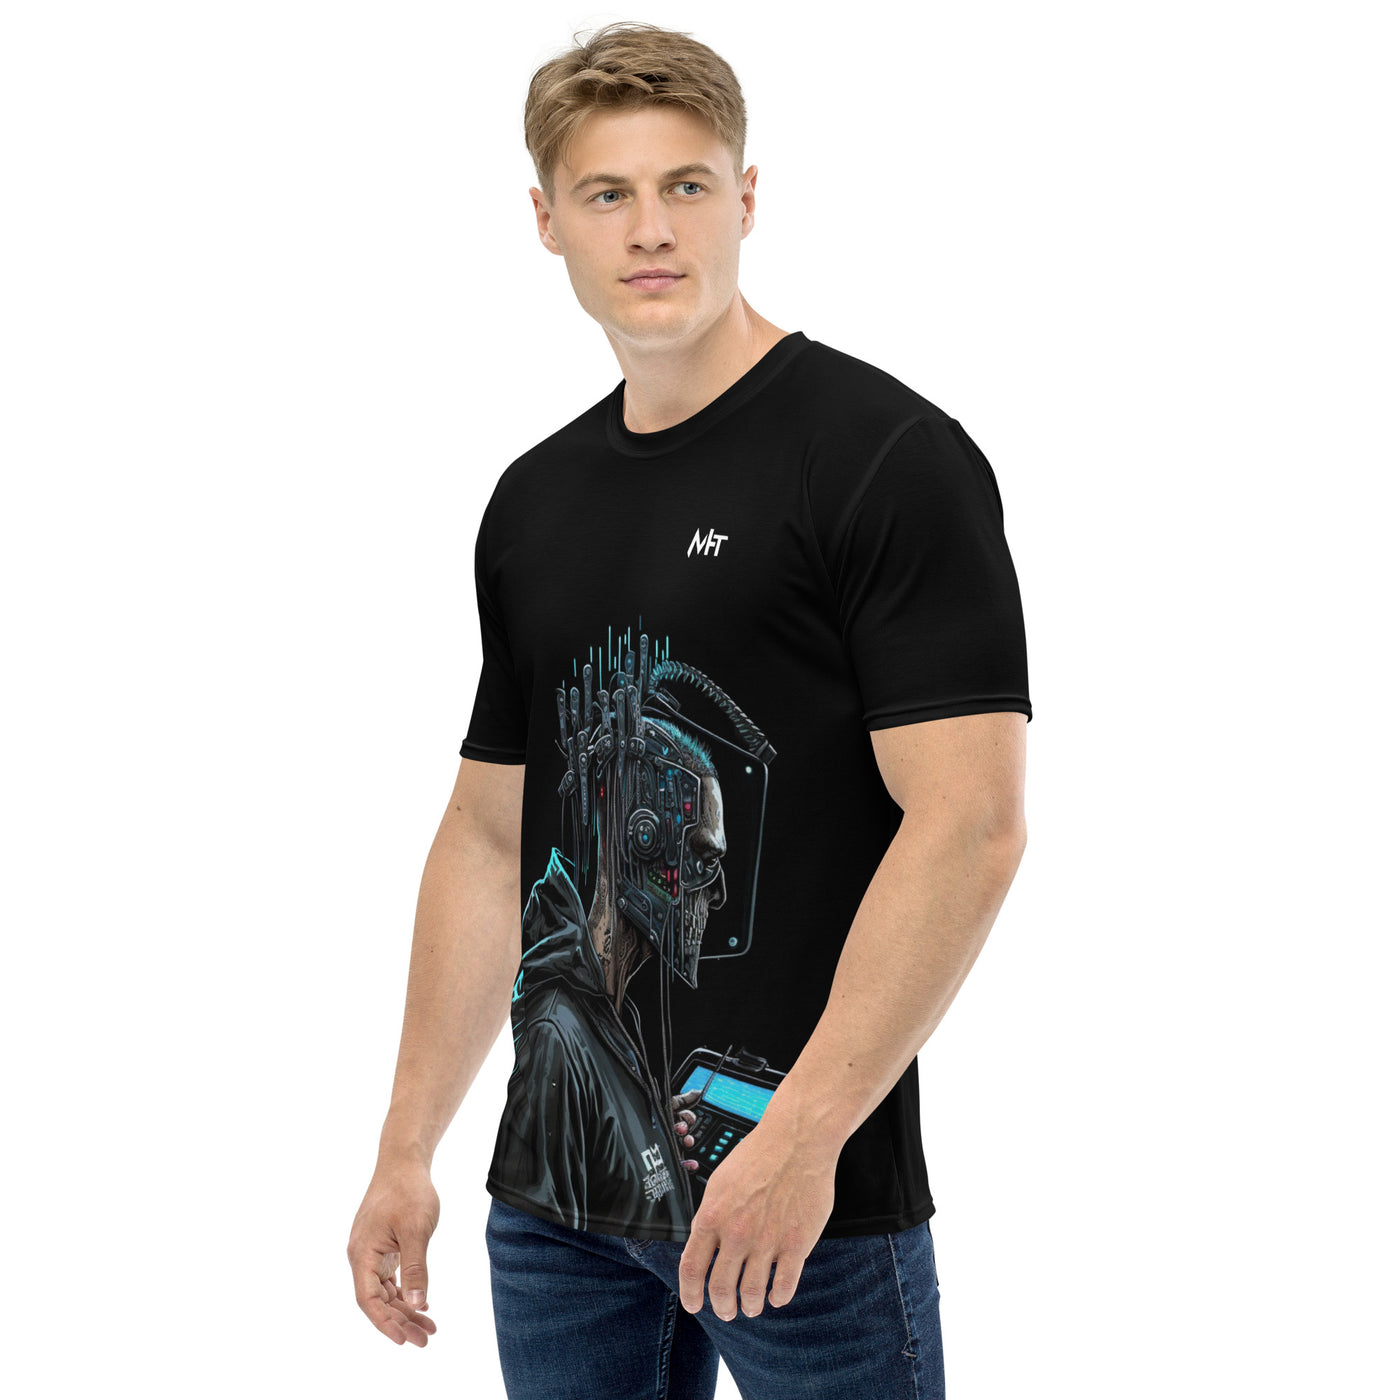 Cyberware assassin v6 - Men's t-shirt